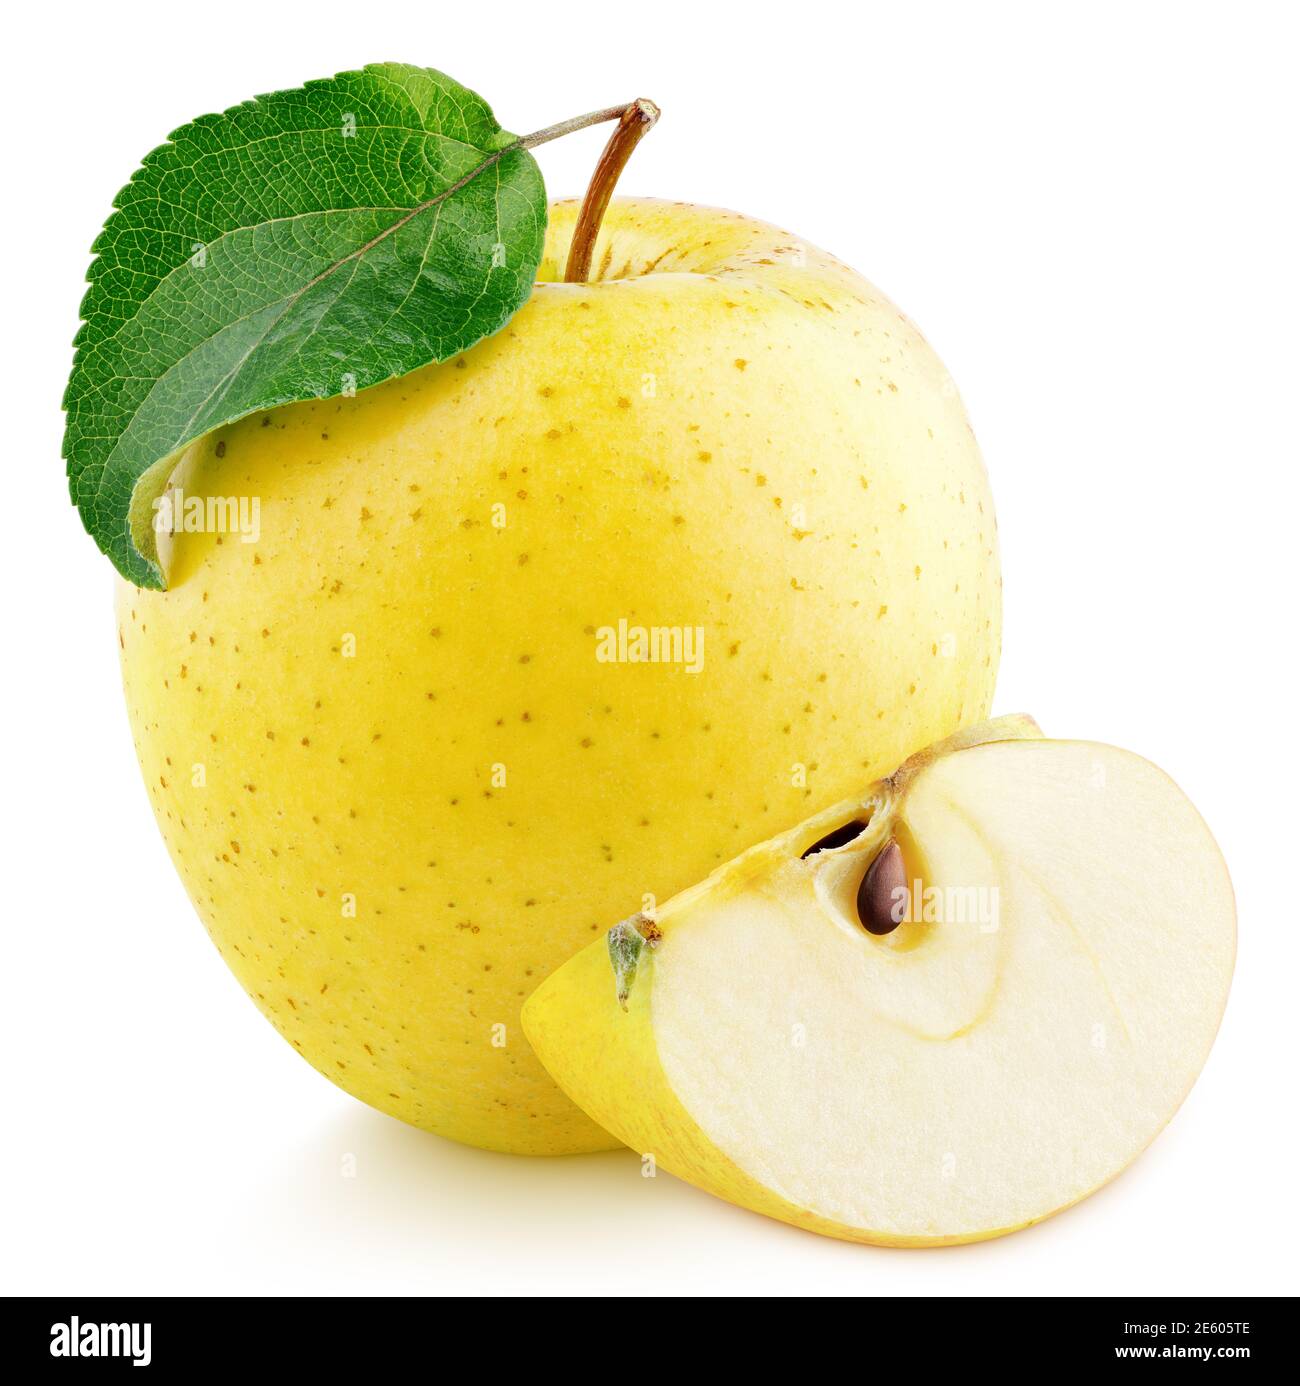 Gelbe Apfelfrucht mit grünem Blatt und Scheibe isoliert auf weißem Hintergrund. Goldener Apfel mit Schneideweg. Volle Schärfentiefe Stockfoto